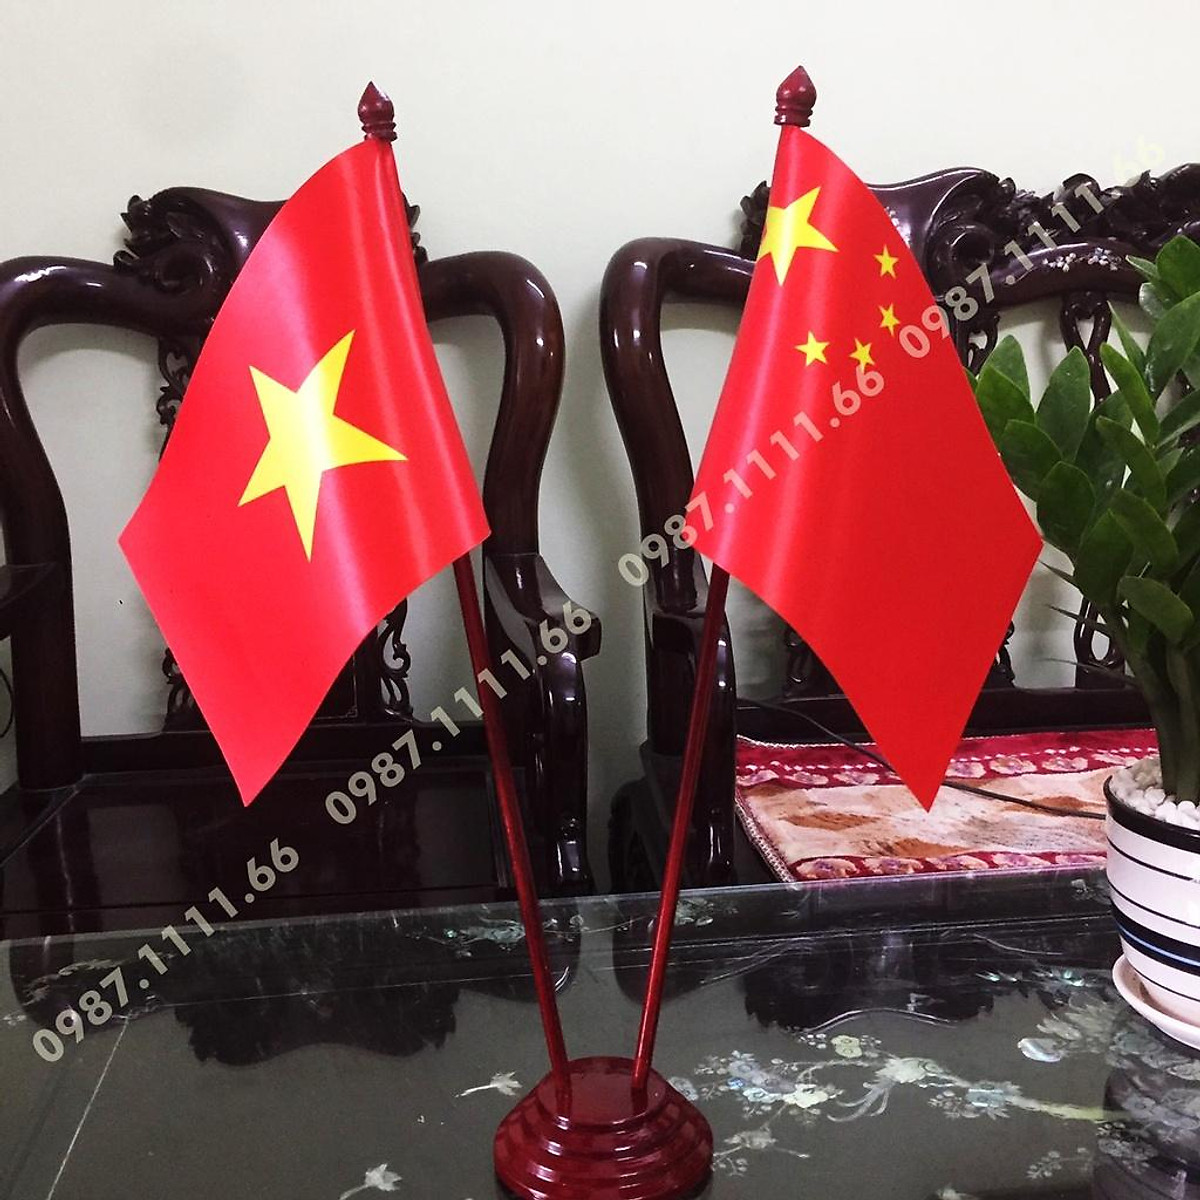 Cờ Việt Nam vẫn luôn là biểu tượng tổ quốc đầy ý nghĩa. Với cờ đế bàn đẹp mắt in kỹ thuật số, bạn có thể đặt trên bàn làm việc làm tăng tính hứng khởi cho công việc. Cờ có kích thước thông dụng cắm 2 cờ Việt Nam - Trung Quốc sẽ là một phụ kiện thú vị trong không gian của bạn.